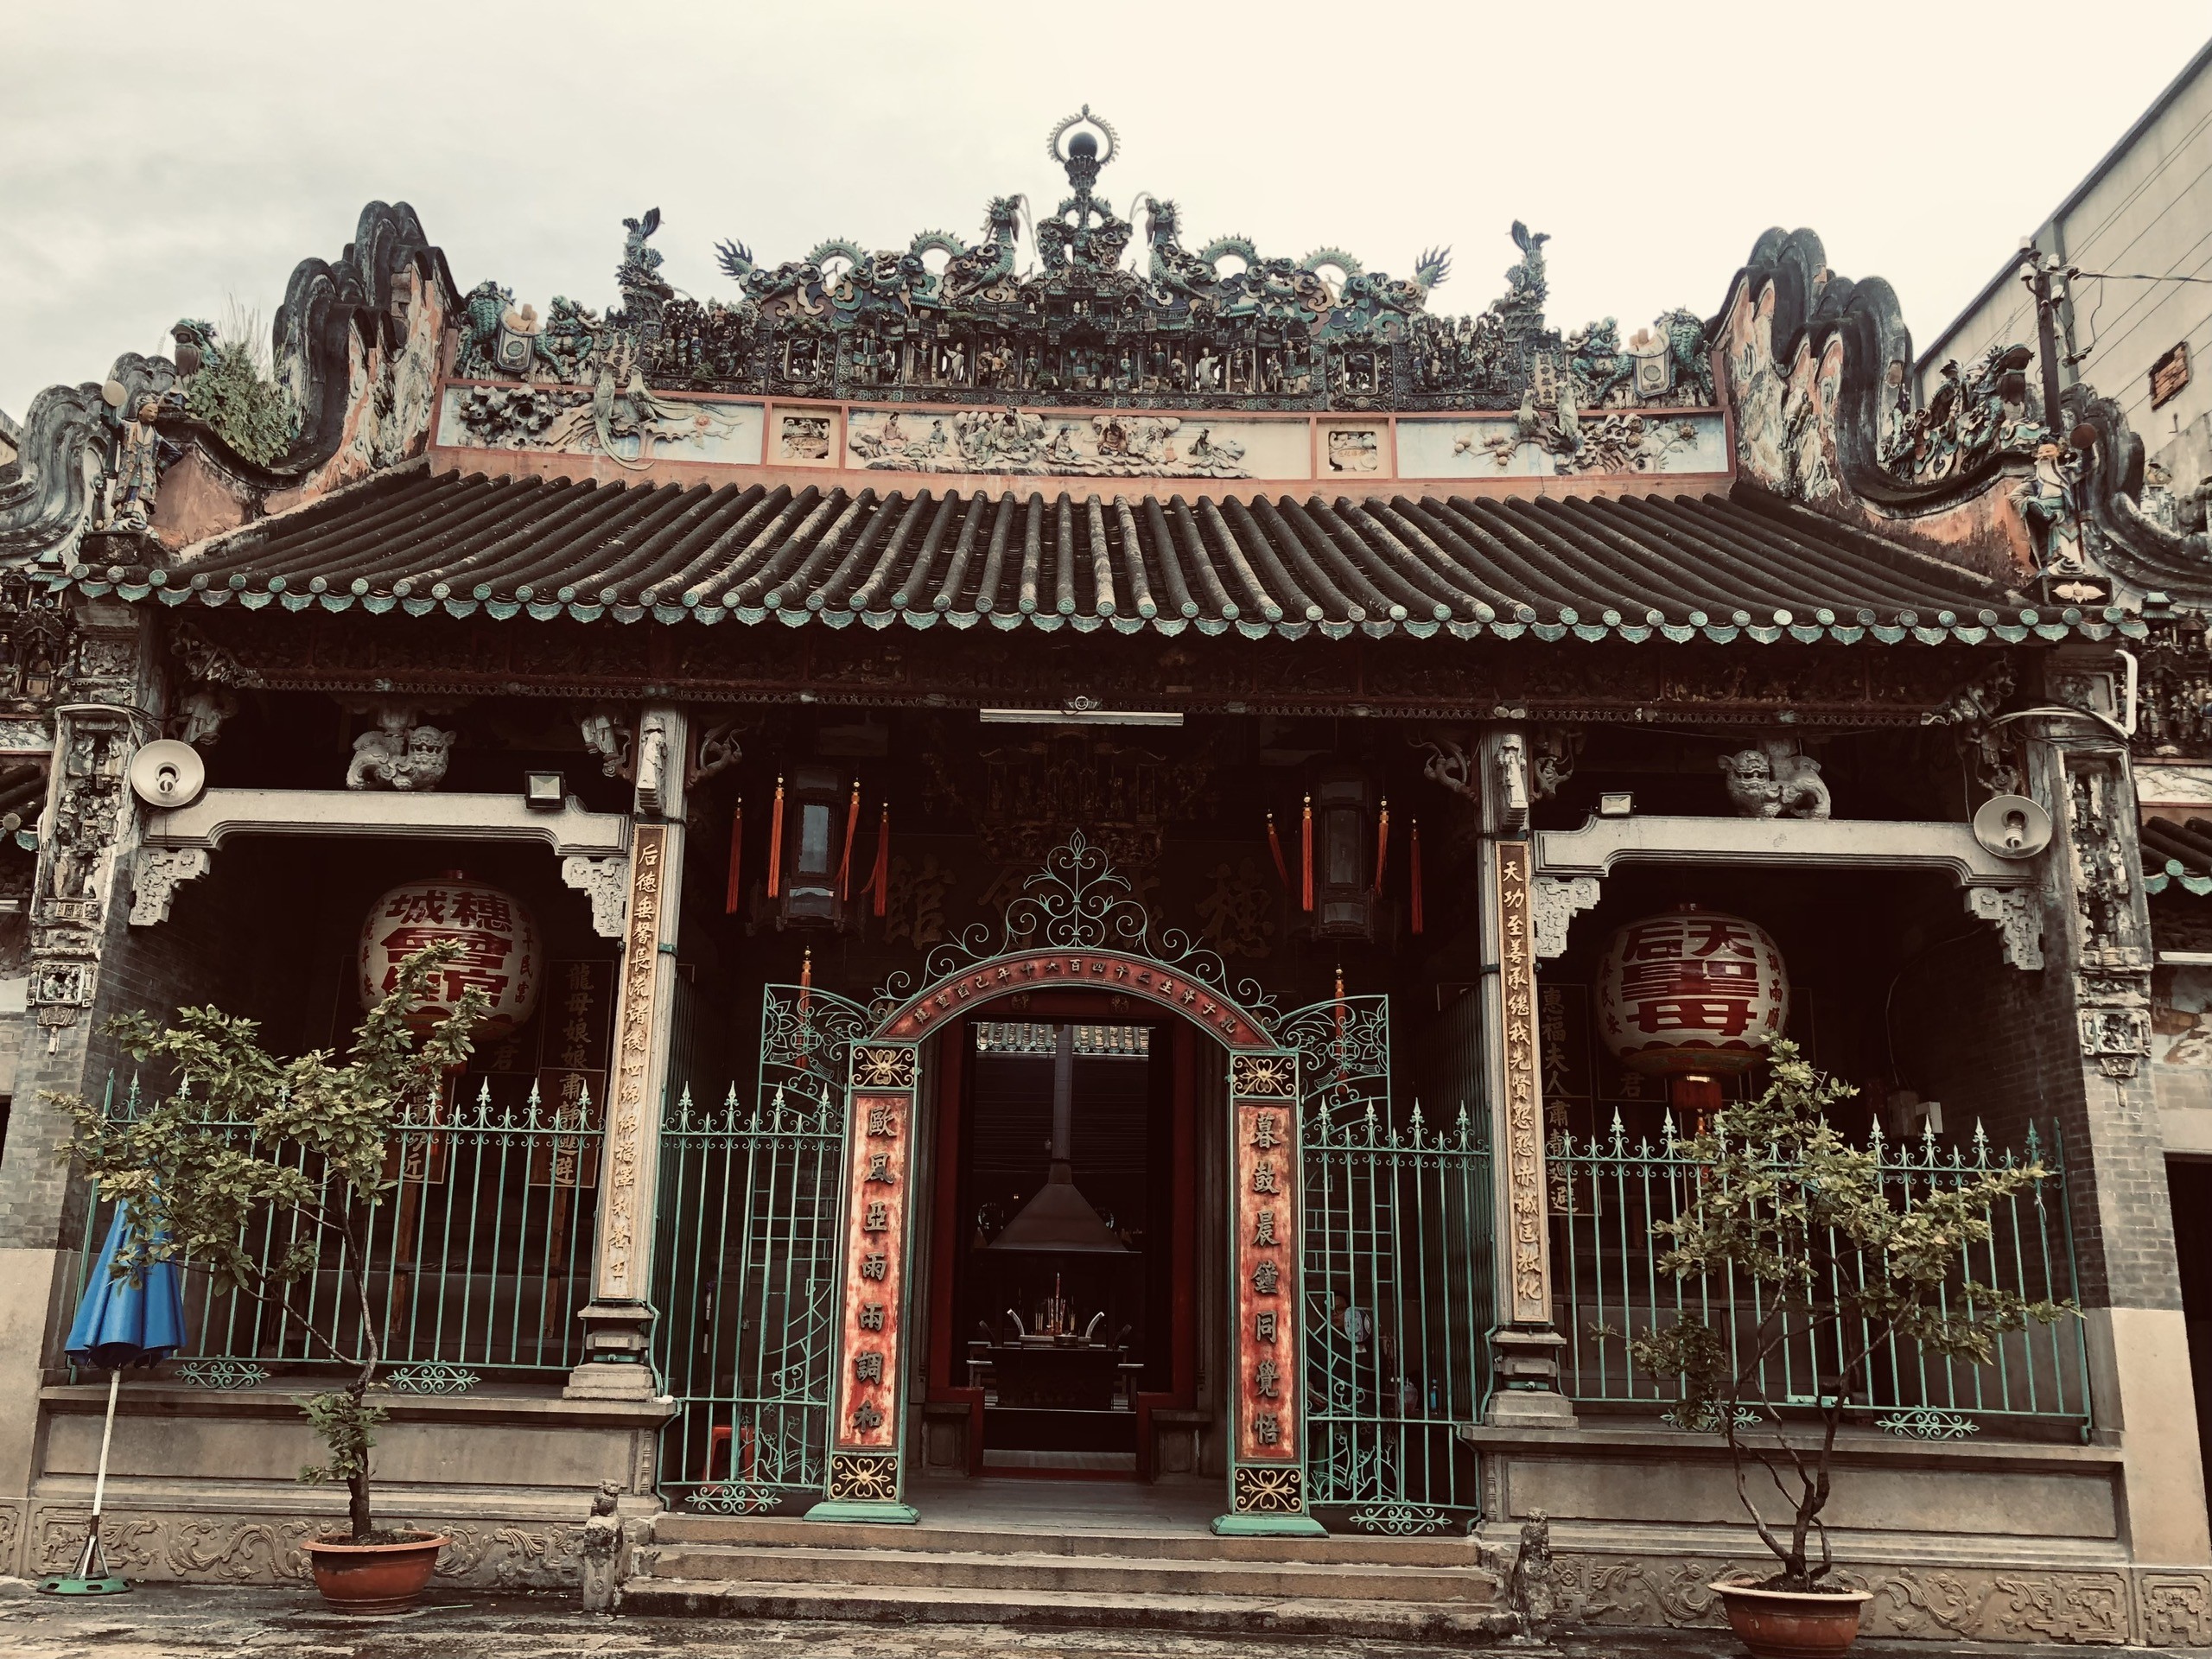 Khám phá chùa Bà Thiên Hậu - phong cách kiến trúc độc đáo người Hoa